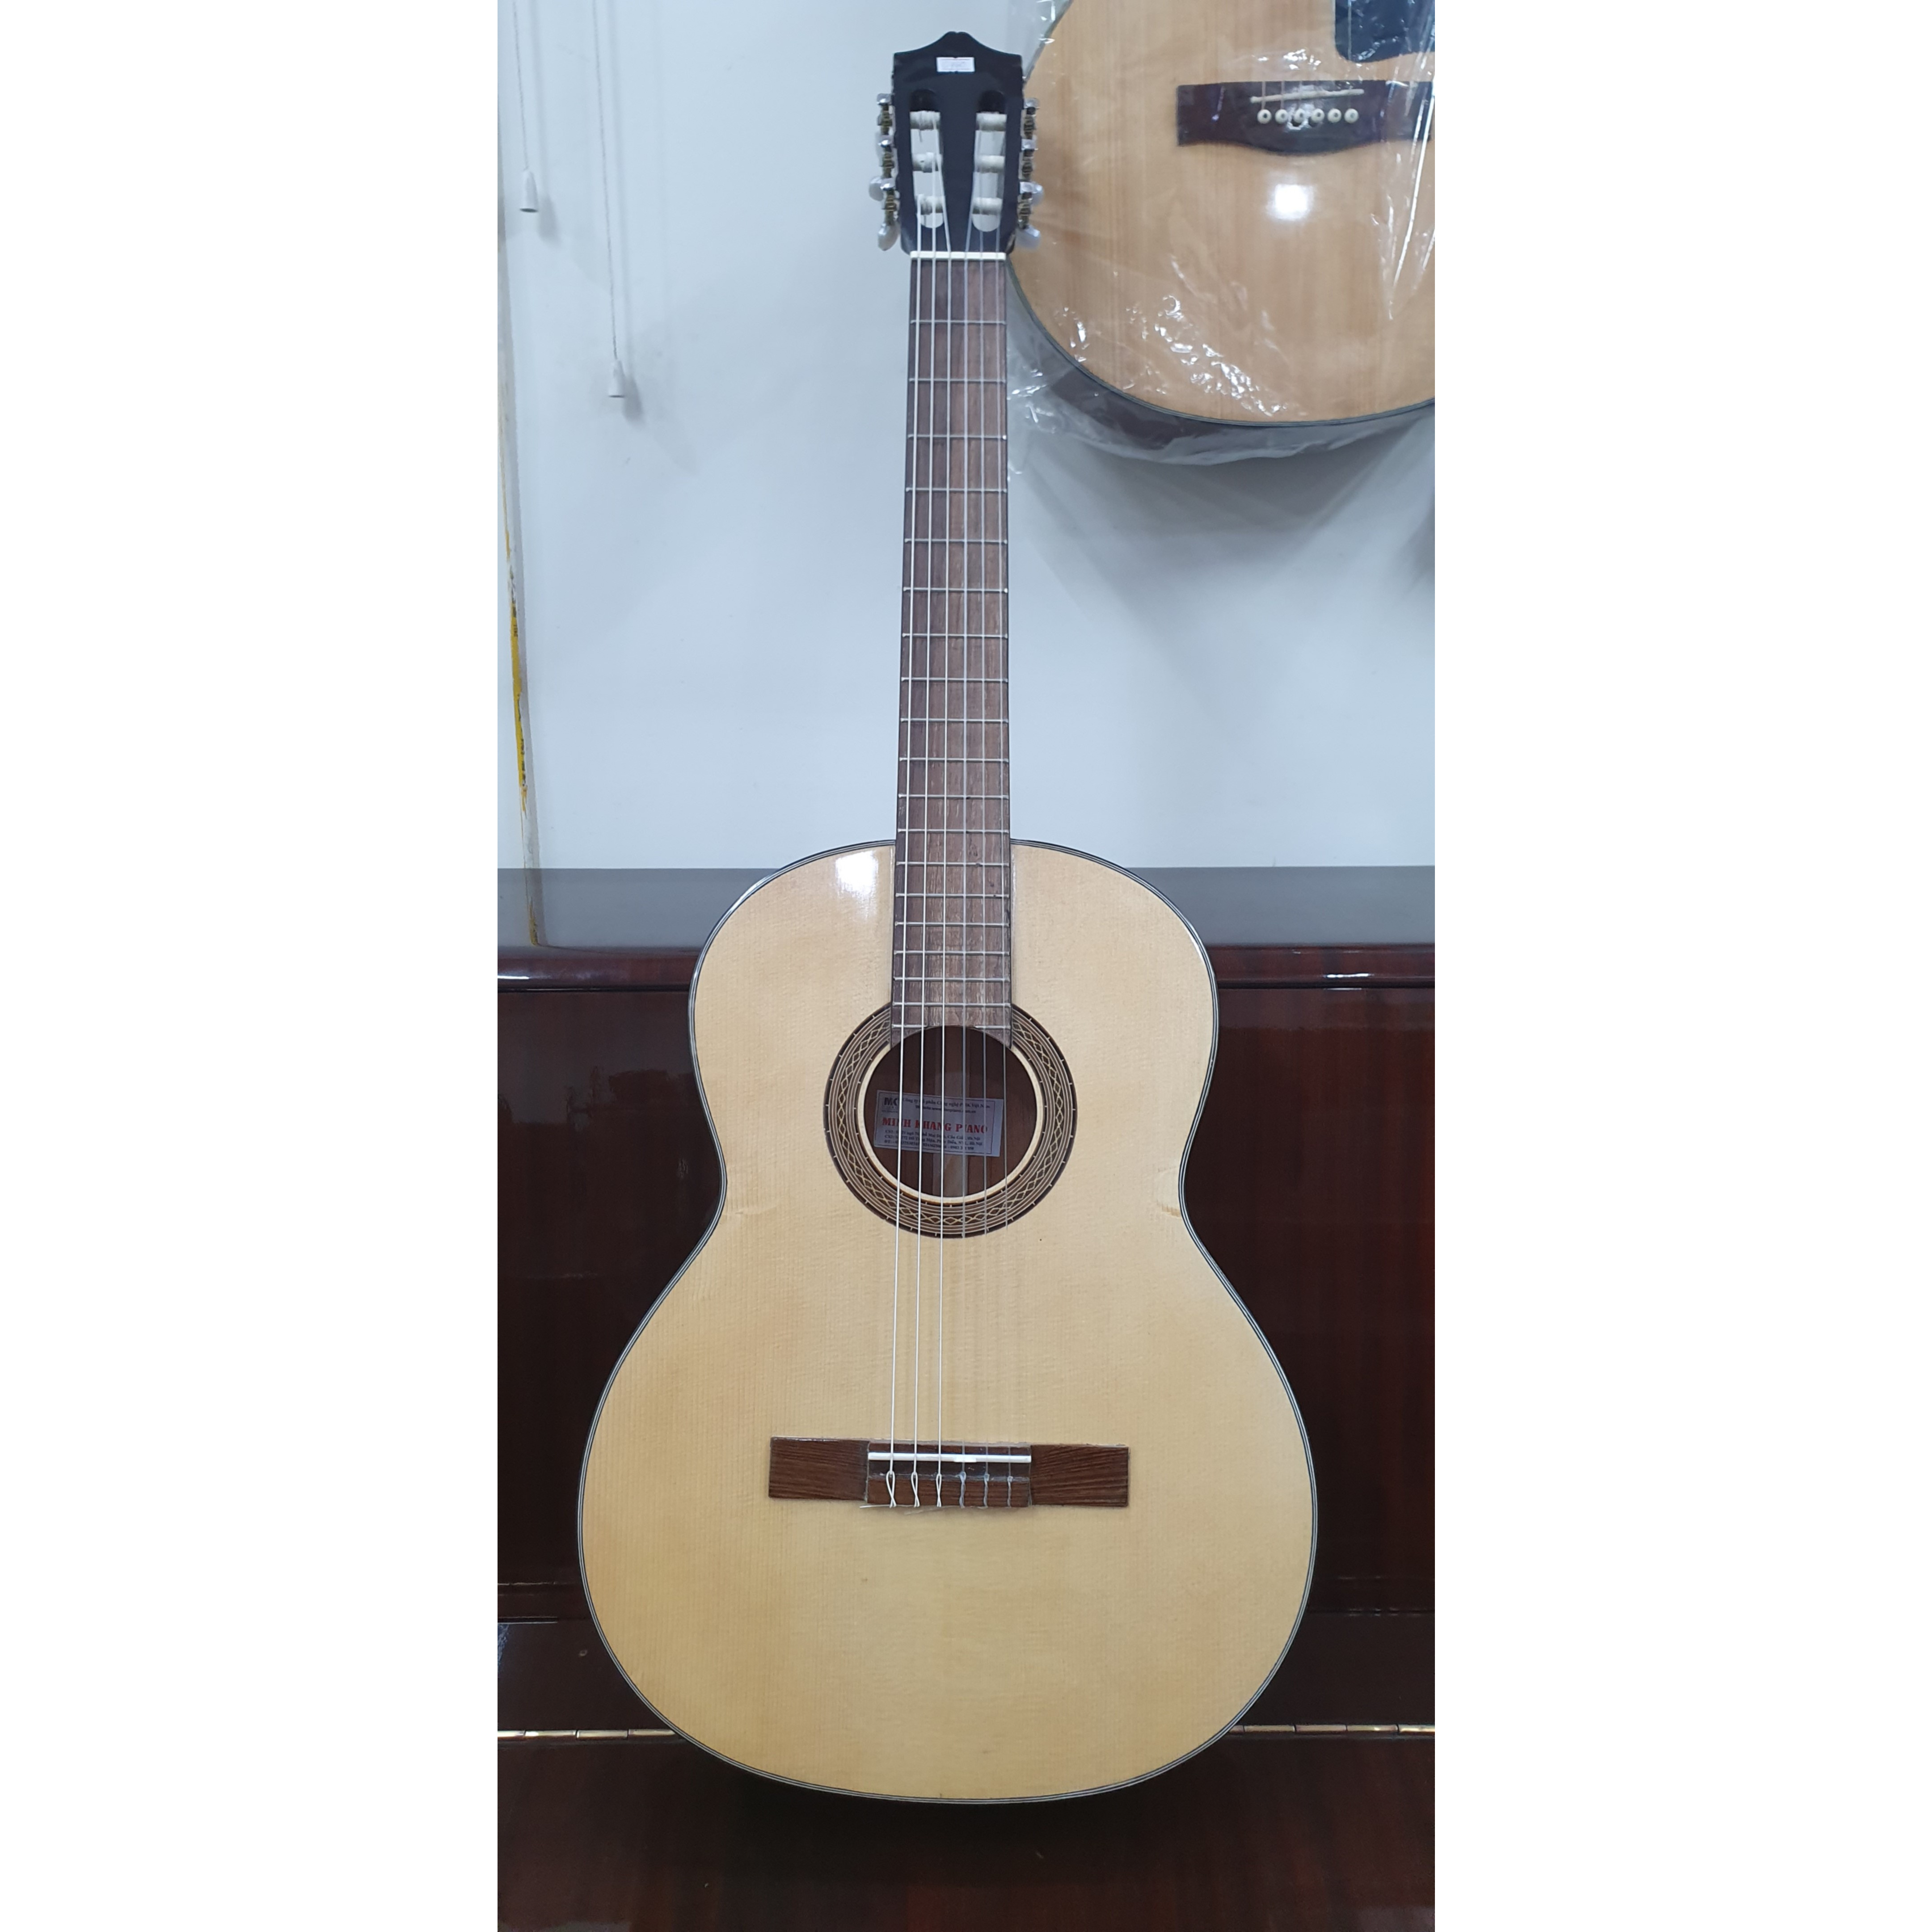 Đàn guitar Classic MKC165, thùng tròn, vân gỗ, size 4, kèm bao da dầy, bộ dây